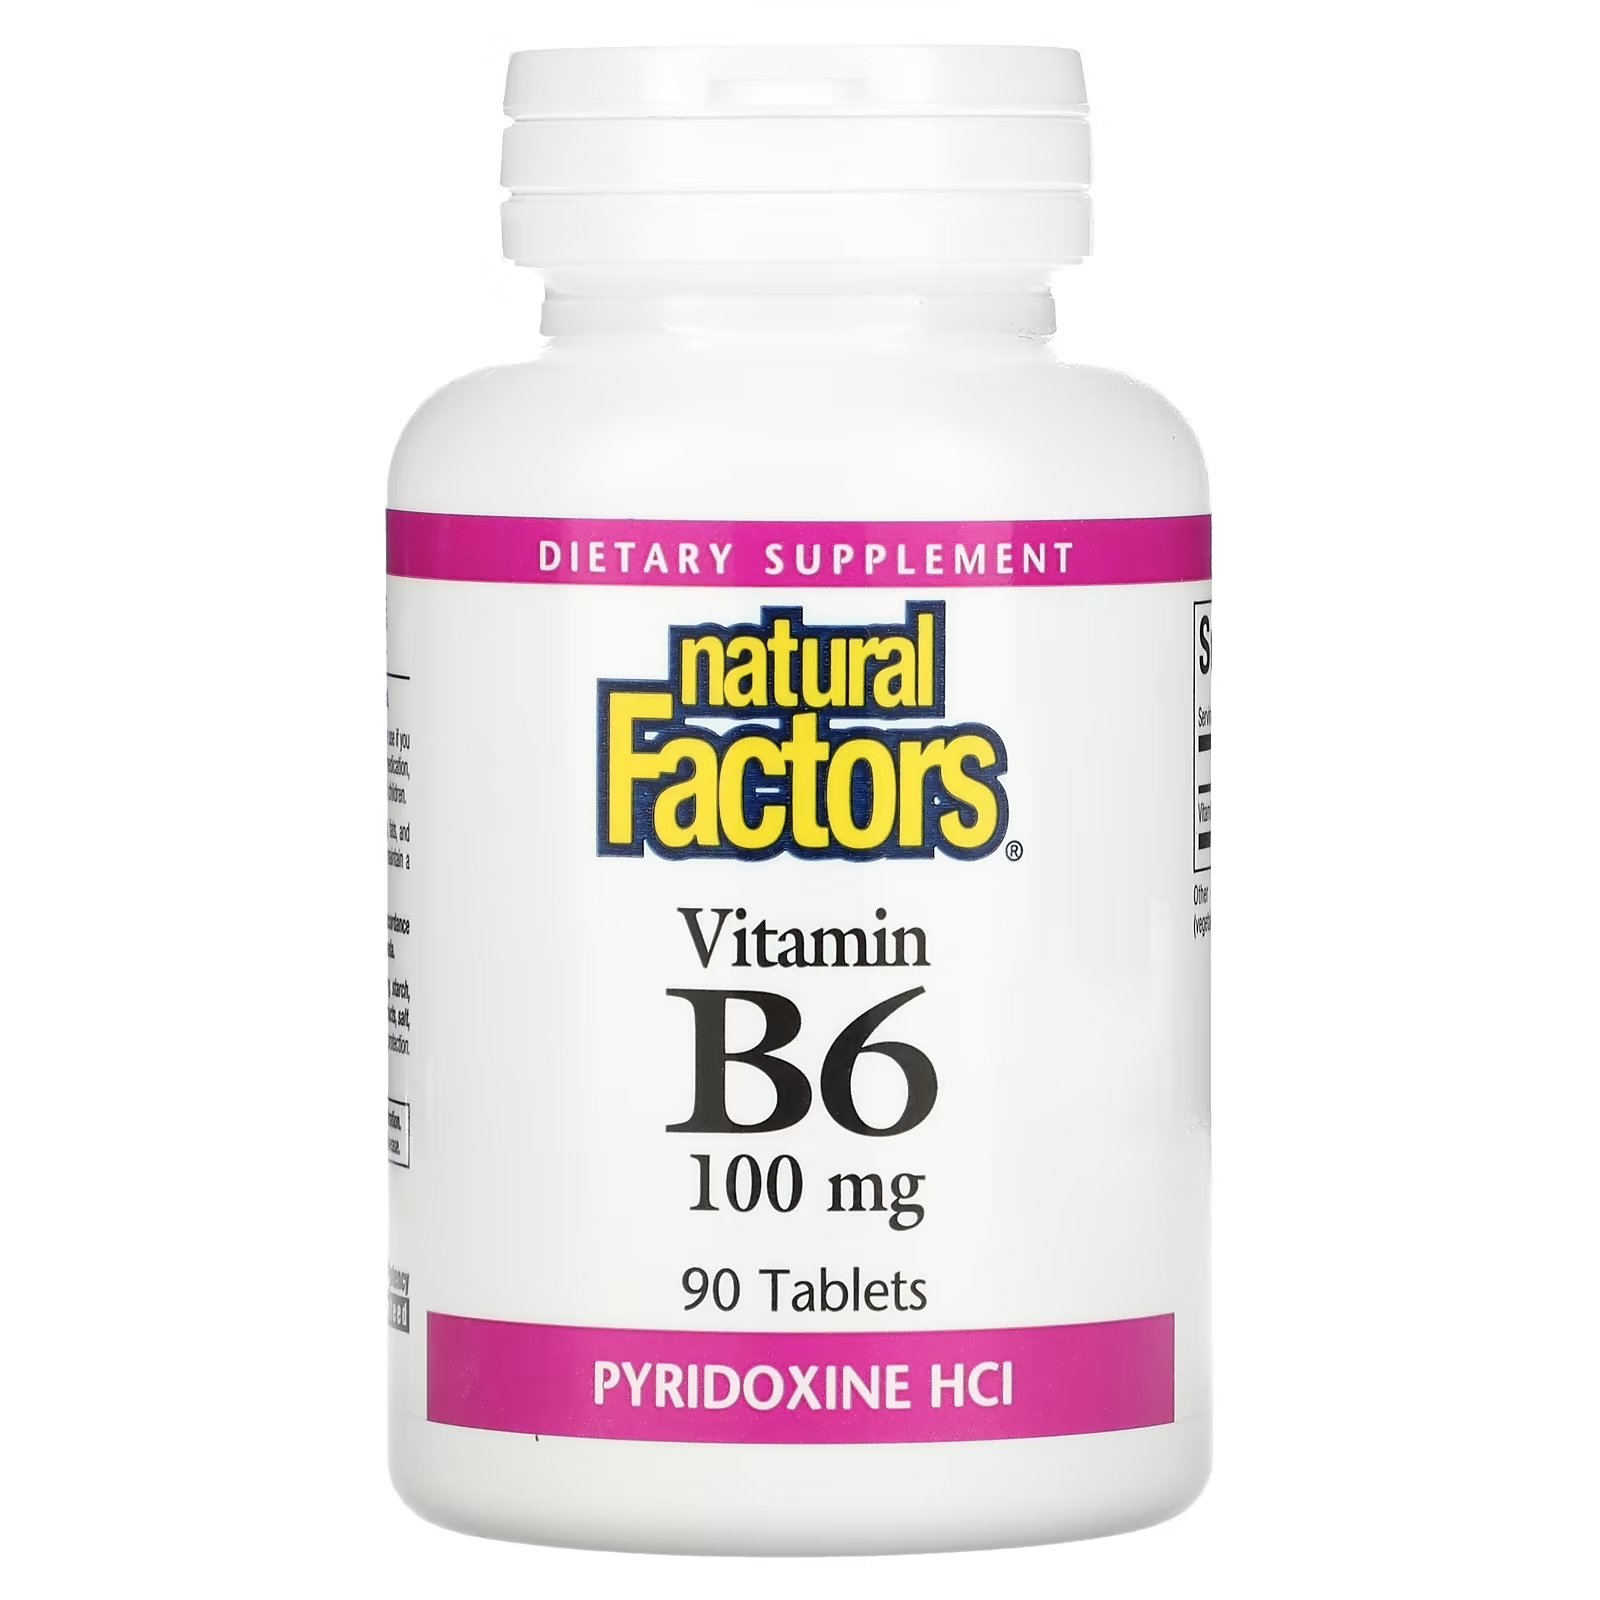 Natural Factors витамин В6 пиридоксина гидрохлорид 100 мг, 90 таблеток витамин b2 natural factors 100 мг 90 таблеток